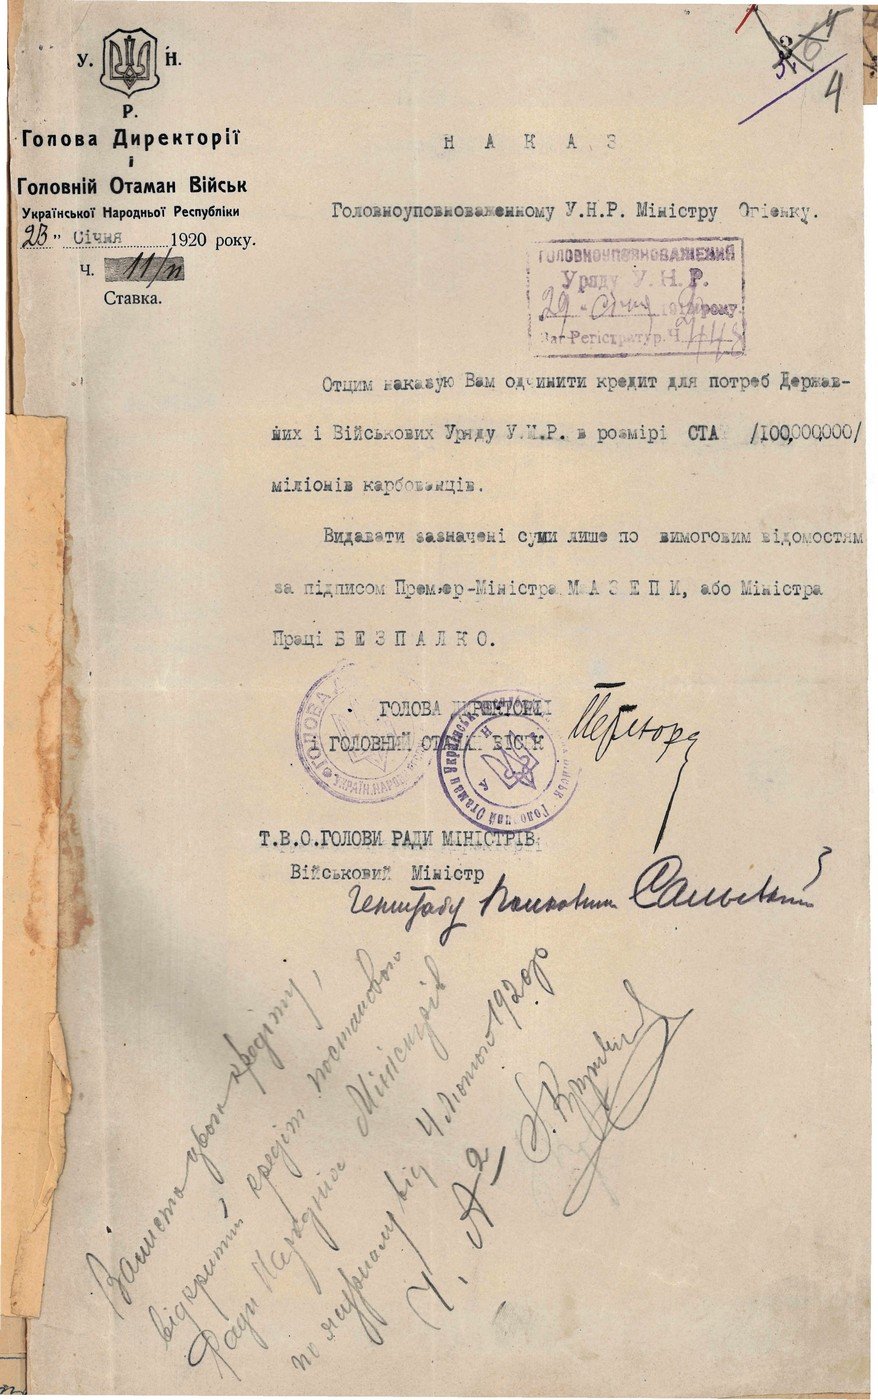 Наказ Директорії УНР Головноуповноваженому УНР, міністру І. Огієнку щодо відкриття кредиту для державних та військових потреб. 23 січня 1920 р.